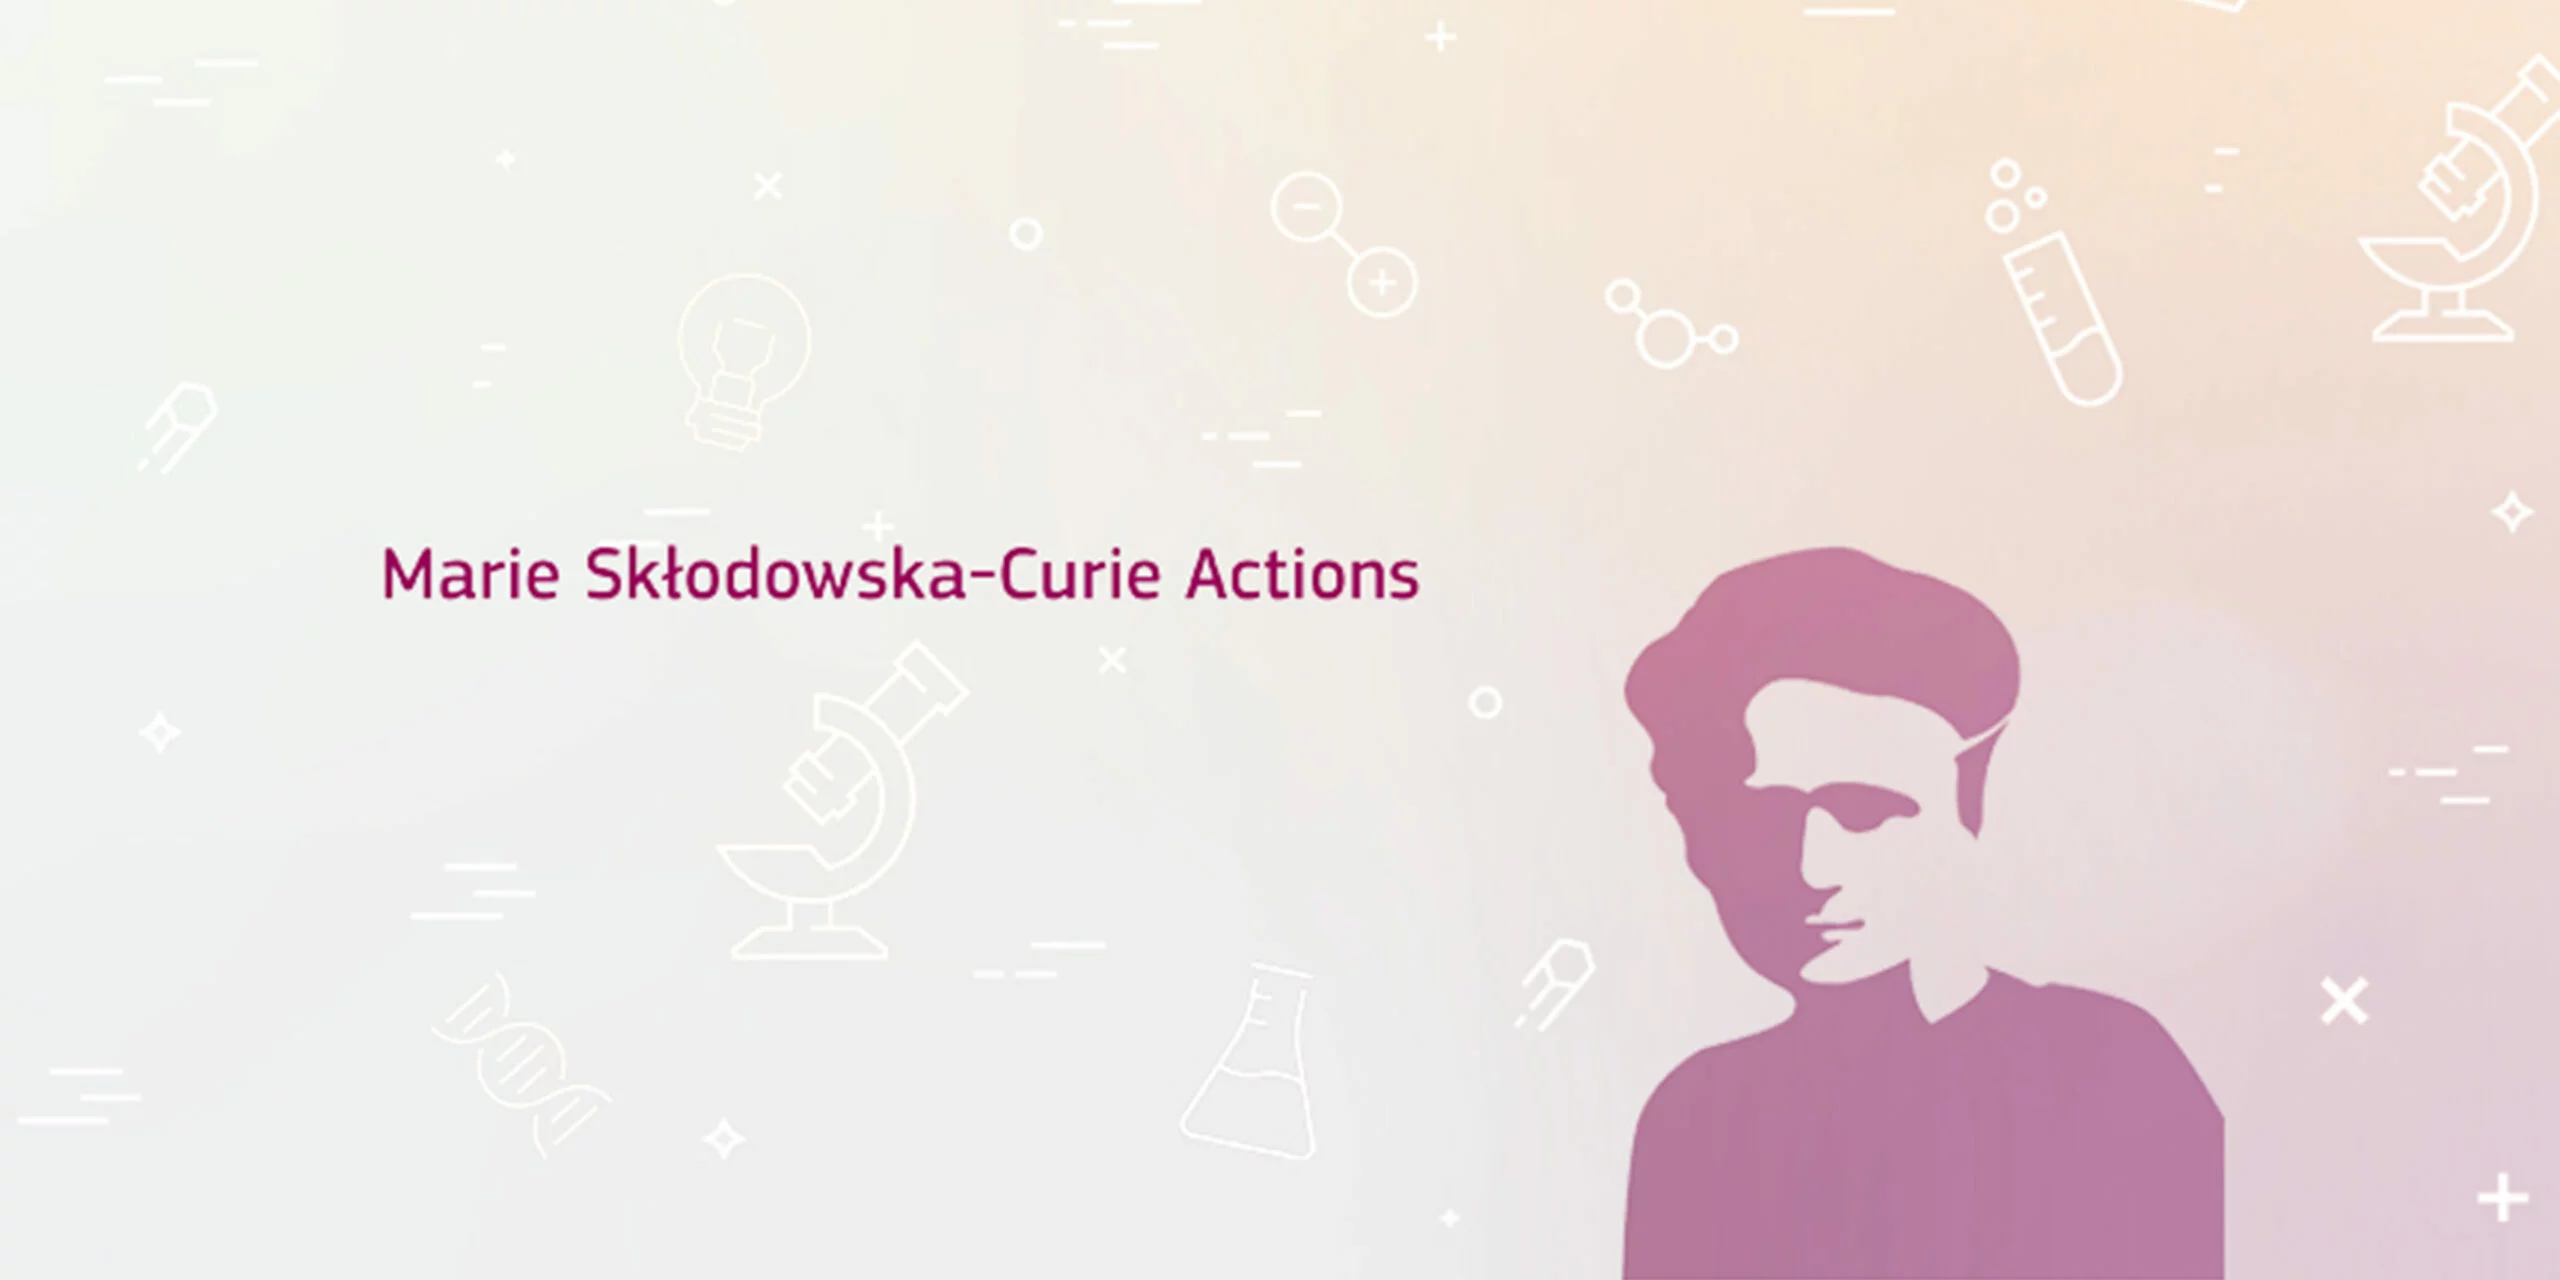 Iscte vai coordenar uma rede doutoral Marie Skłodowska-Curie